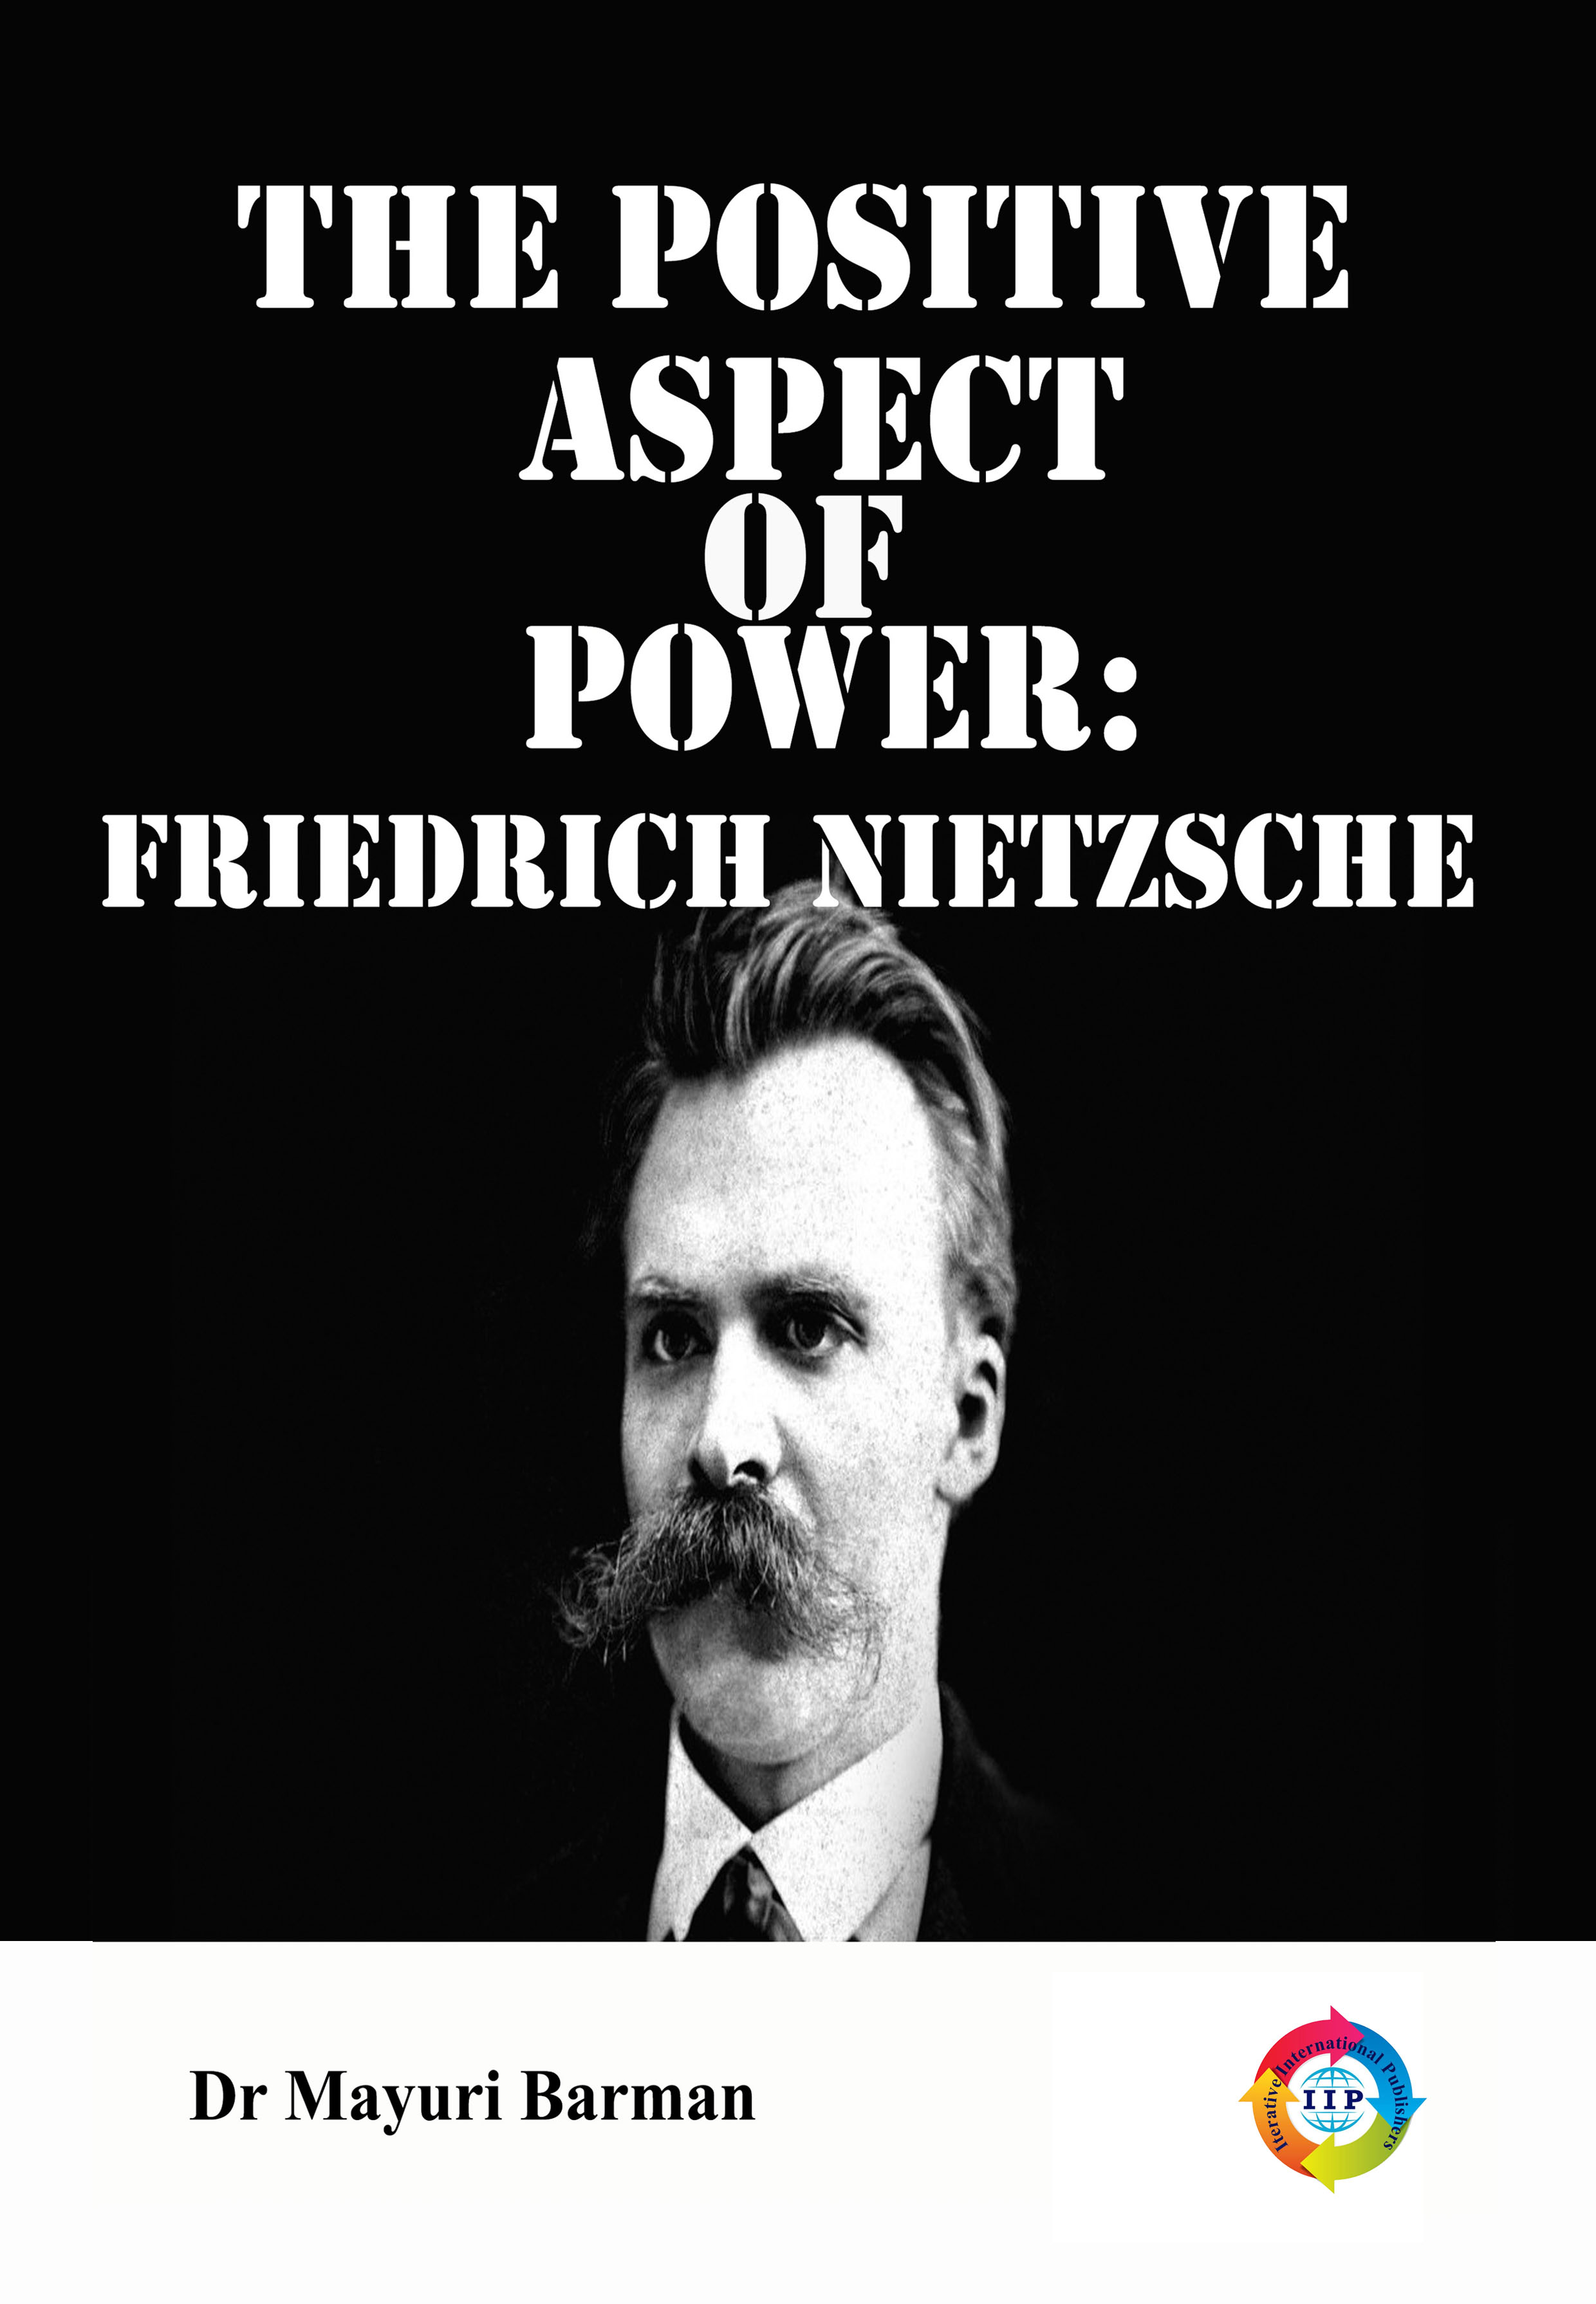 THE POSITIVE ASPECT OF POWER FRIEDRICH NIETZSCHE